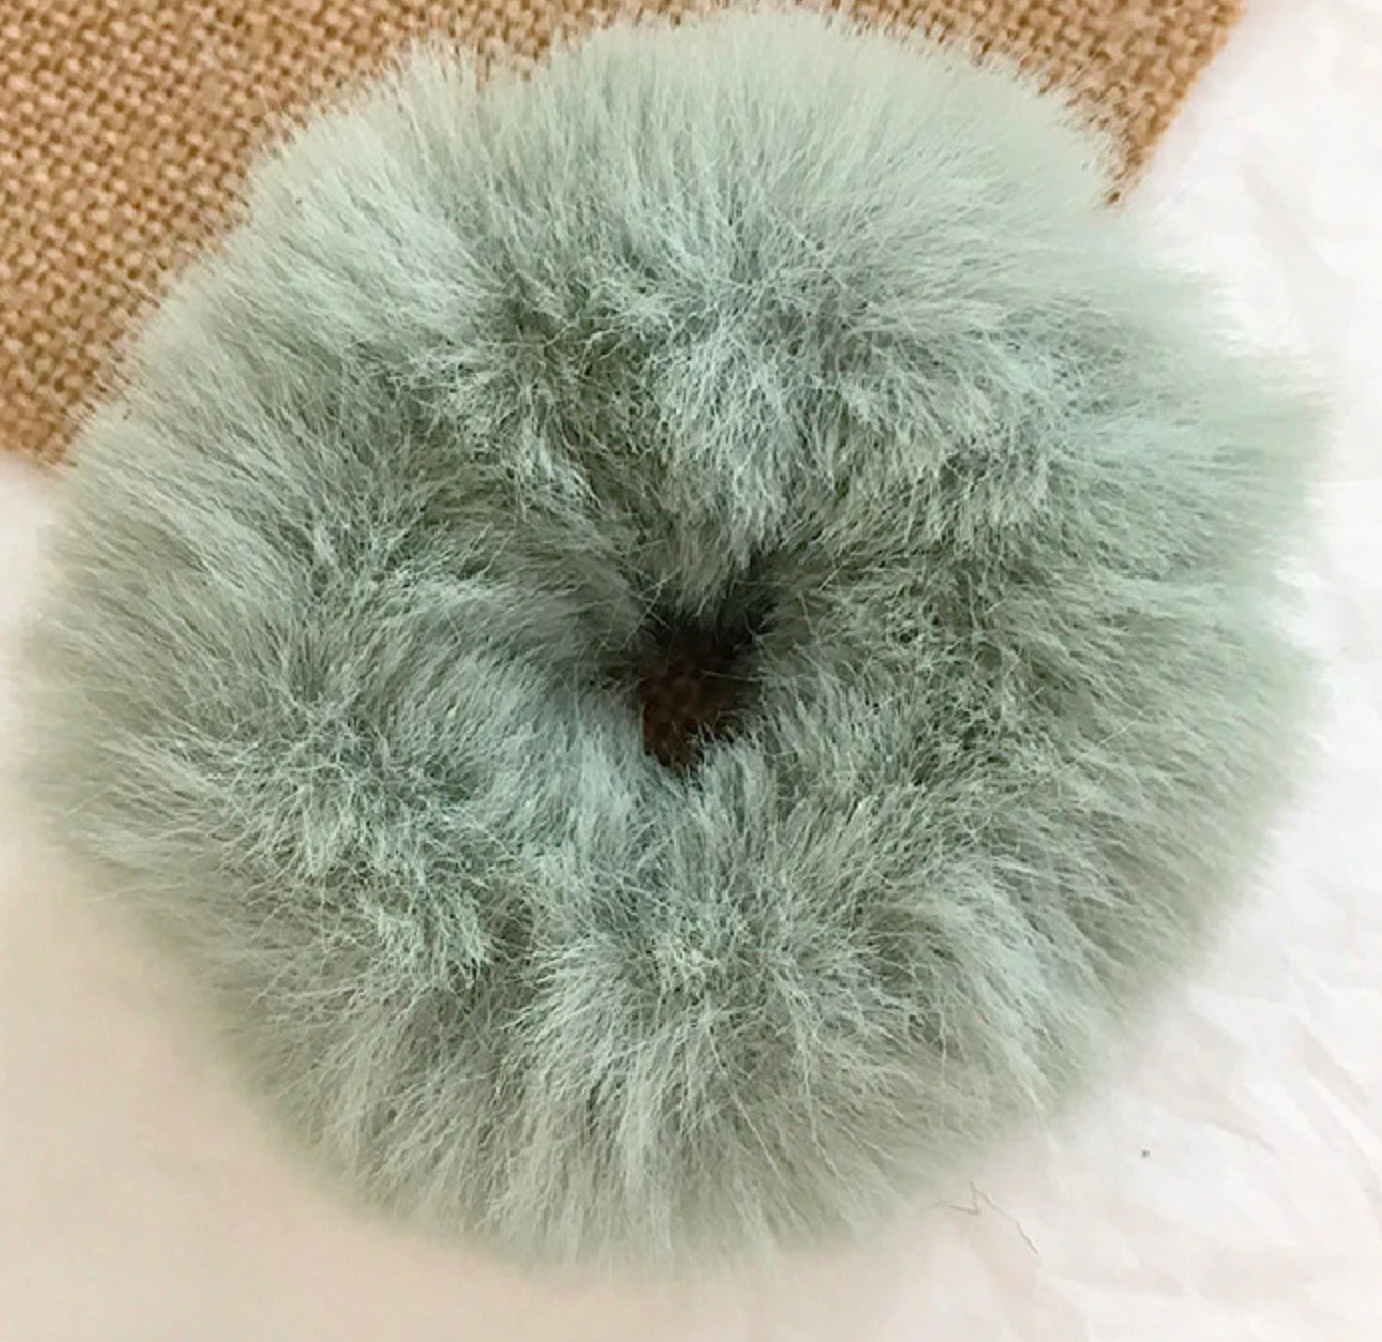 Furry scrunchie